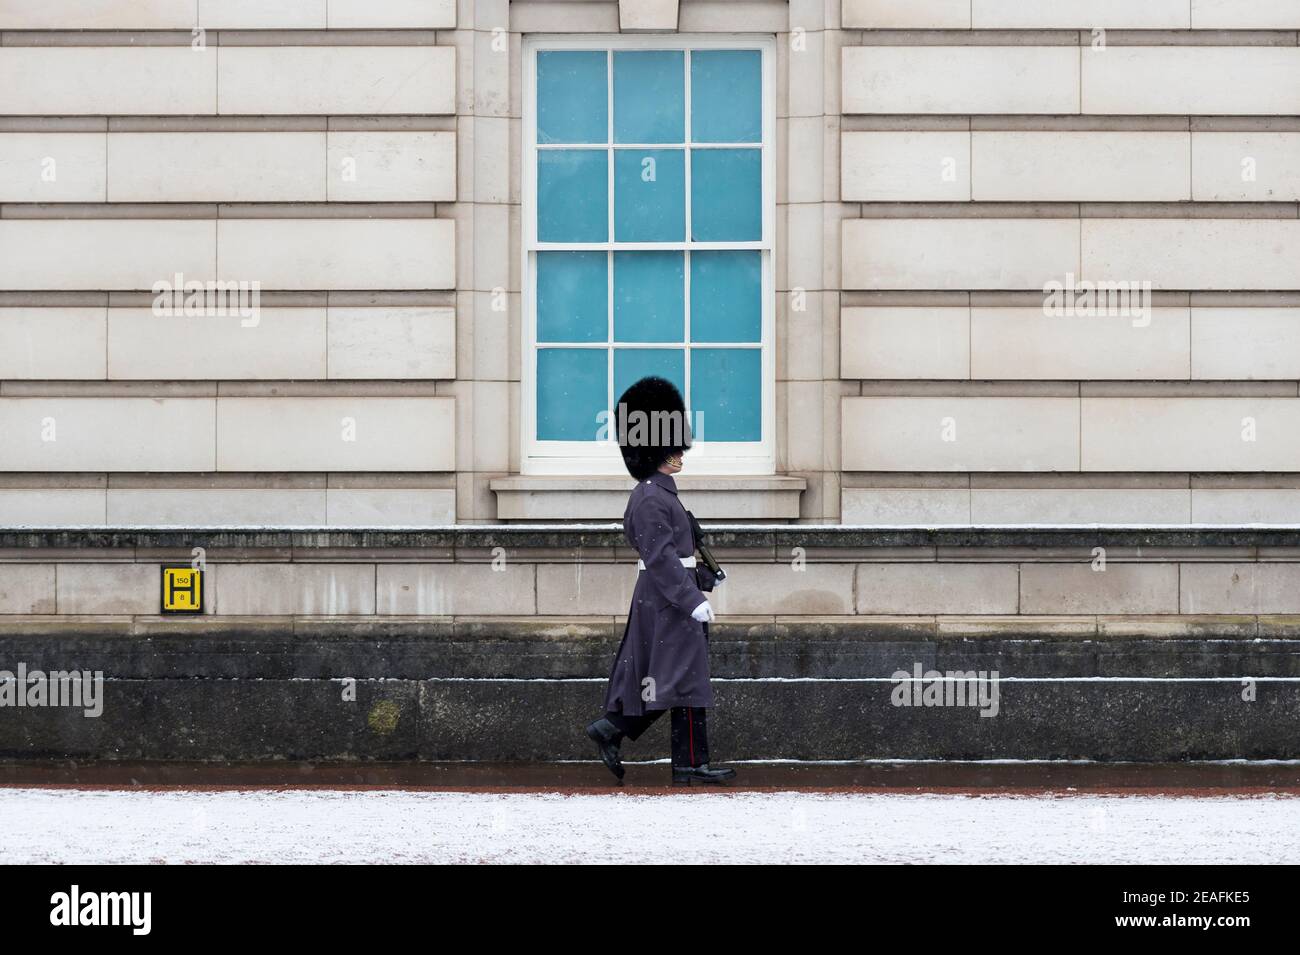 Londra, Regno Unito. 9 febbraio 2021. Tempo nel Regno Unito: Un membro della Guardia della Regina in servizio al di fuori di Buckingham Palace durante le leggere nevicate mentre il clima freddo portato da Storm Darcy continua. Credit: Stephen Chung / Alamy Live News Foto Stock